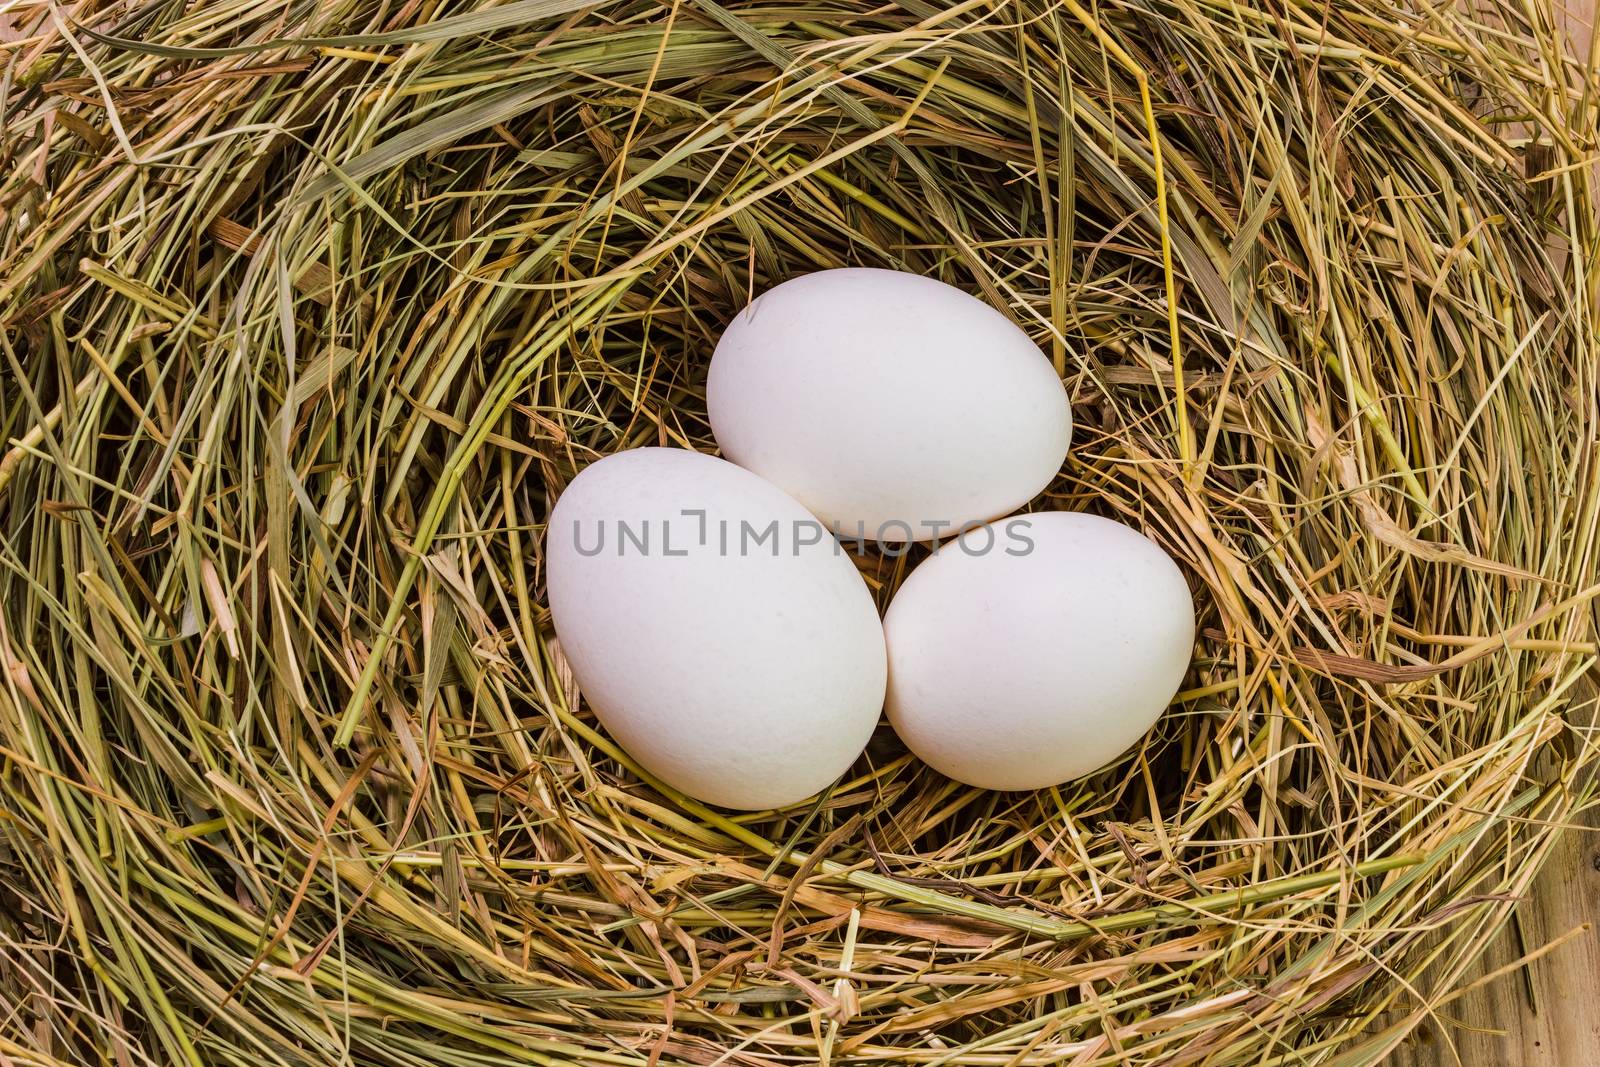 Nest with Easter eggs by oleg_zhukov